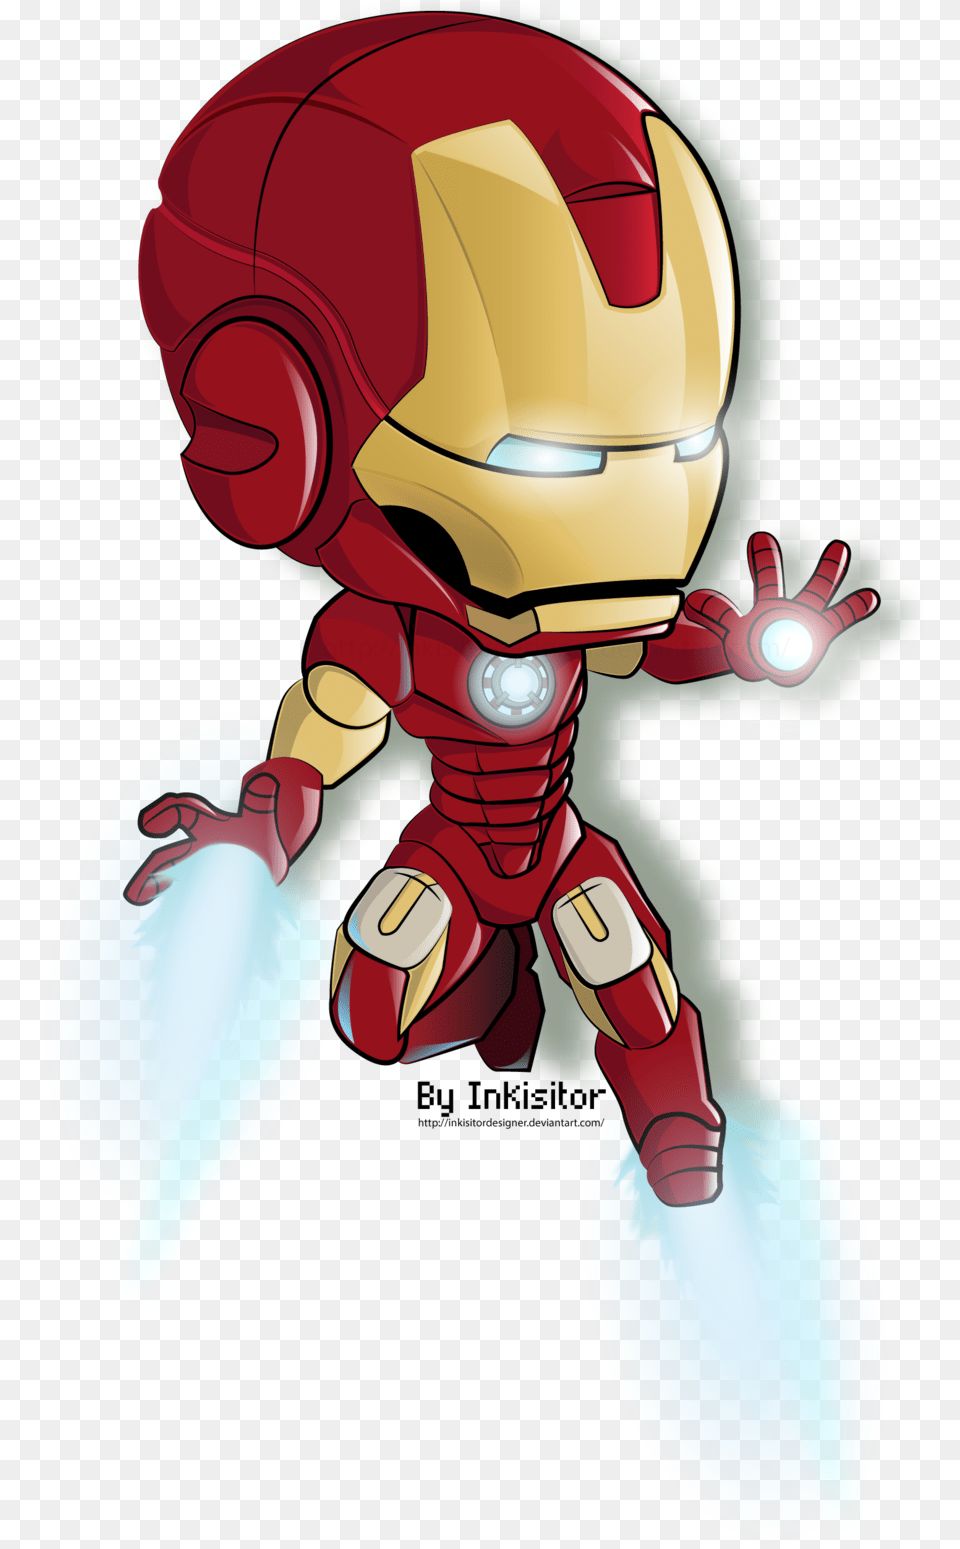 Drawing Photoshop Iron Man Iron Man Cartoon, Book, Comics, Publication, Baby Free Transparent Png